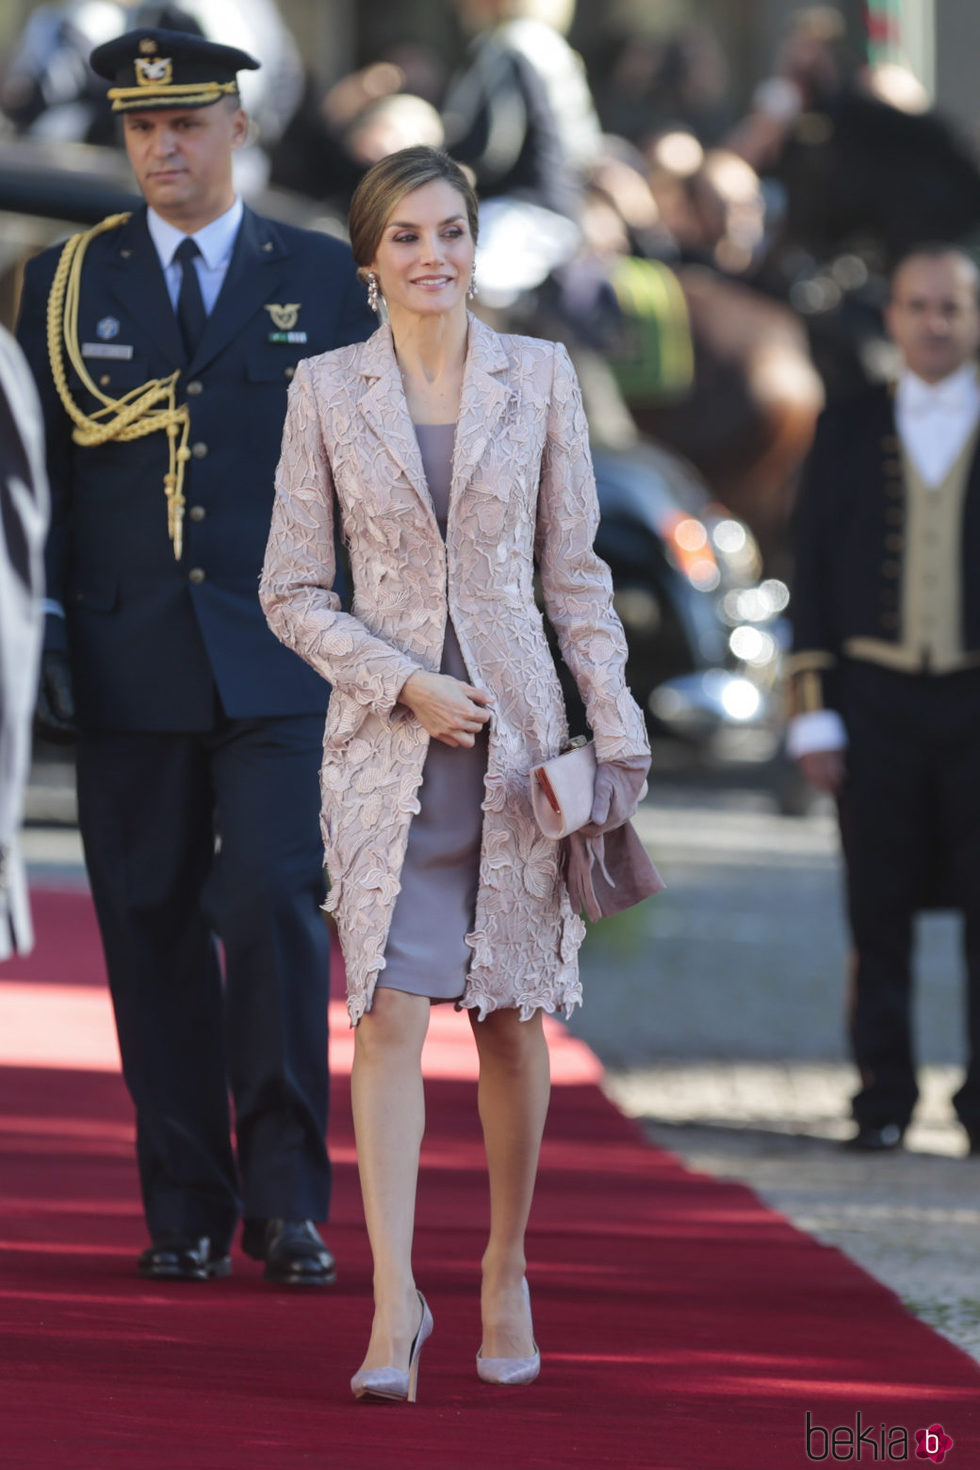 La Reina Letizia llega a Oporto para su Visita de Estado a Portugal